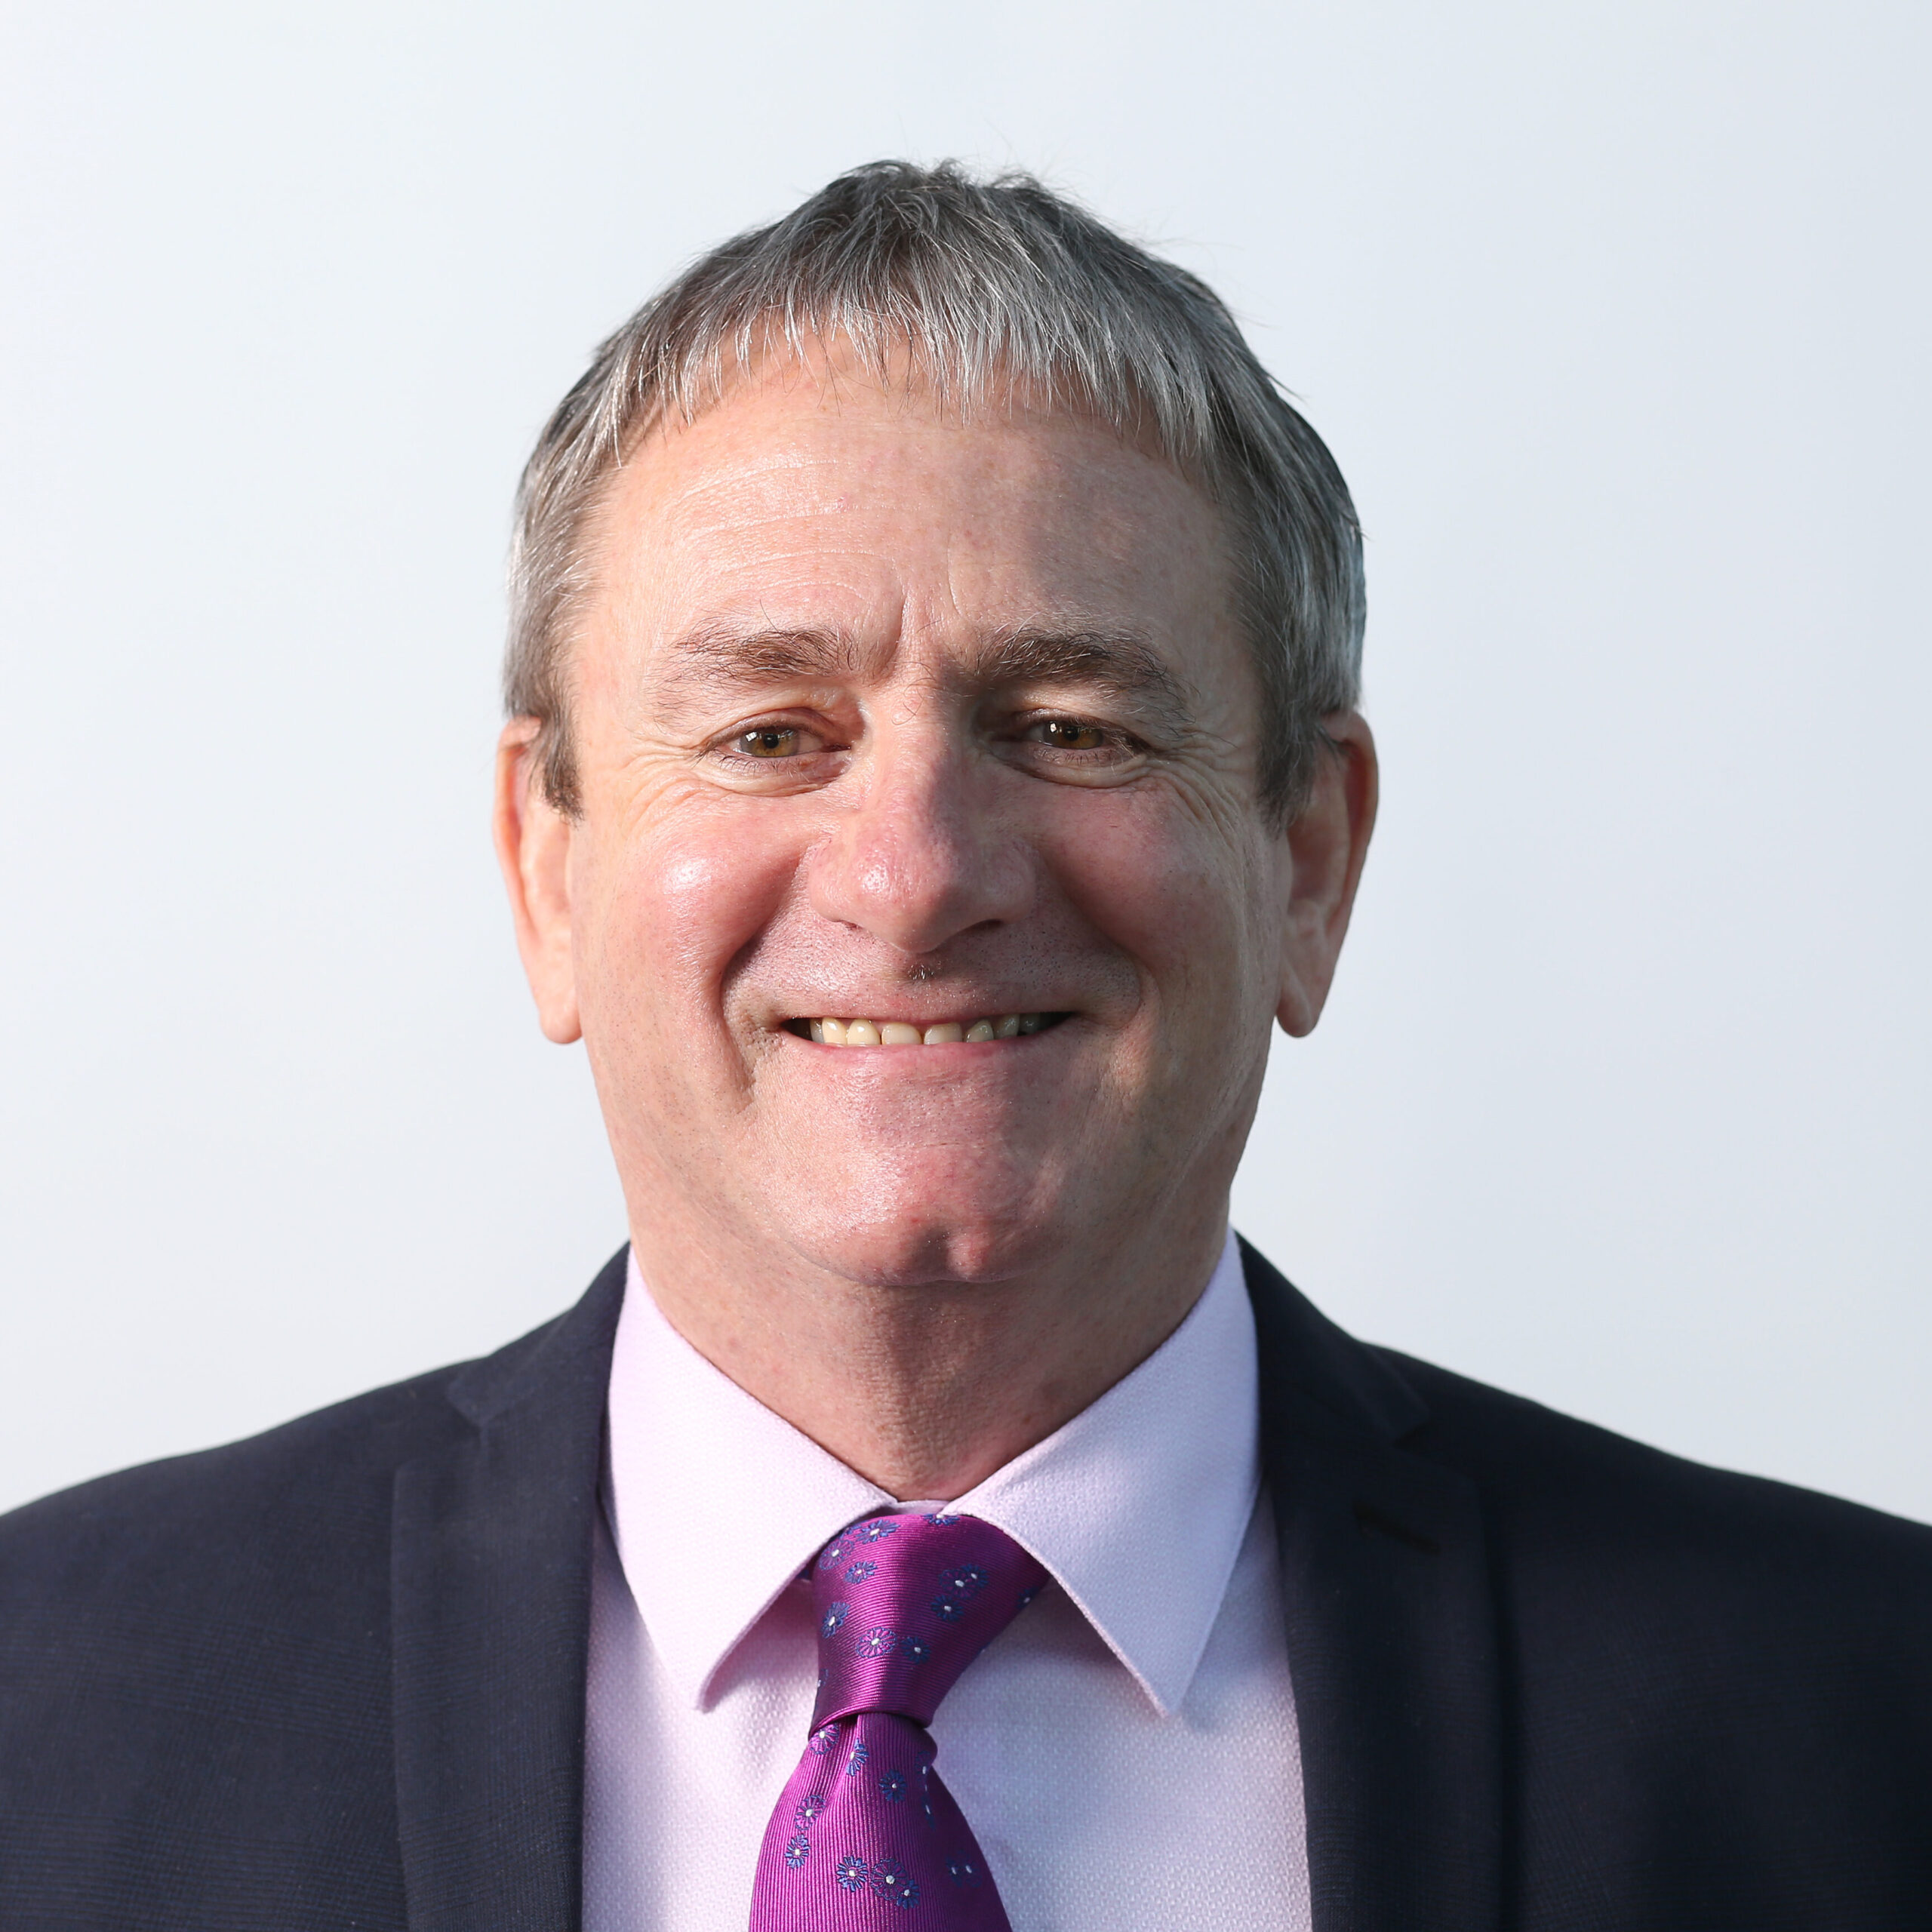 Fairstone financial adviser Craig Dyball